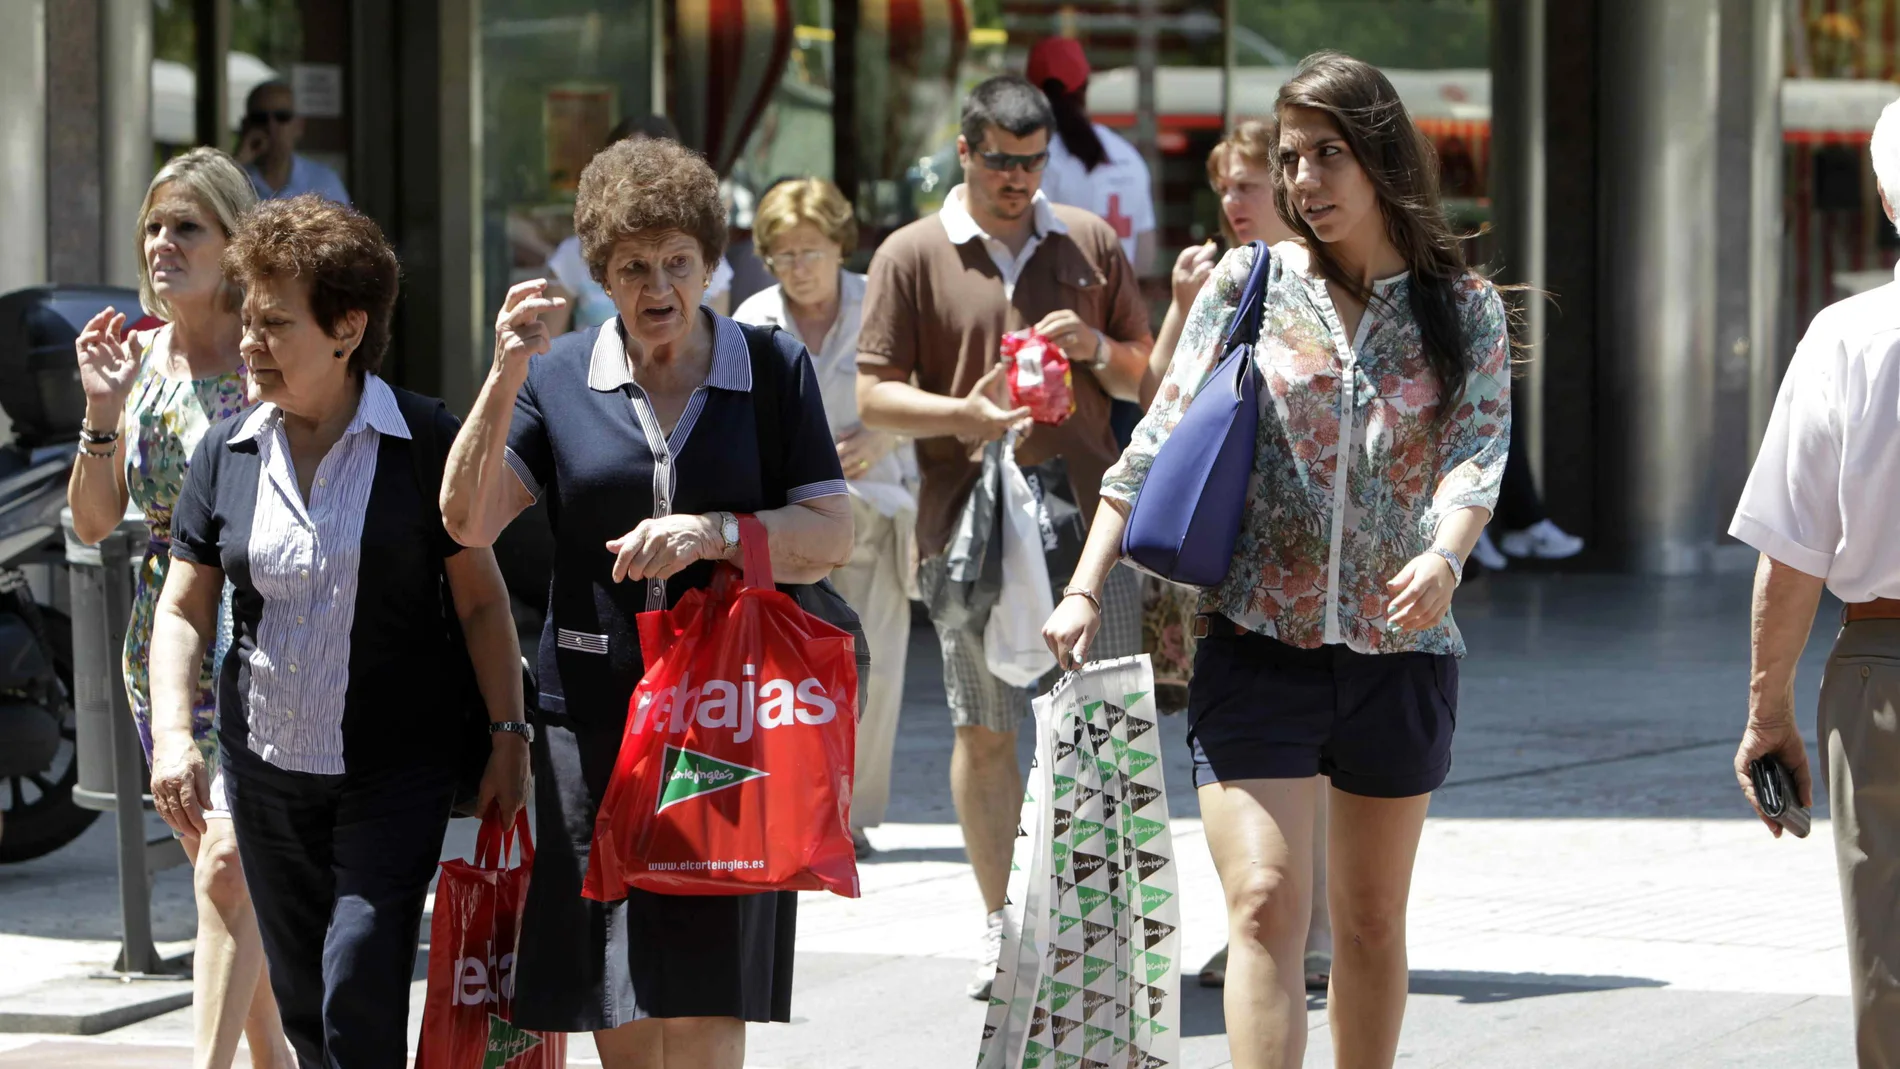 Imagen de archivo de ciudadanos con sus compras